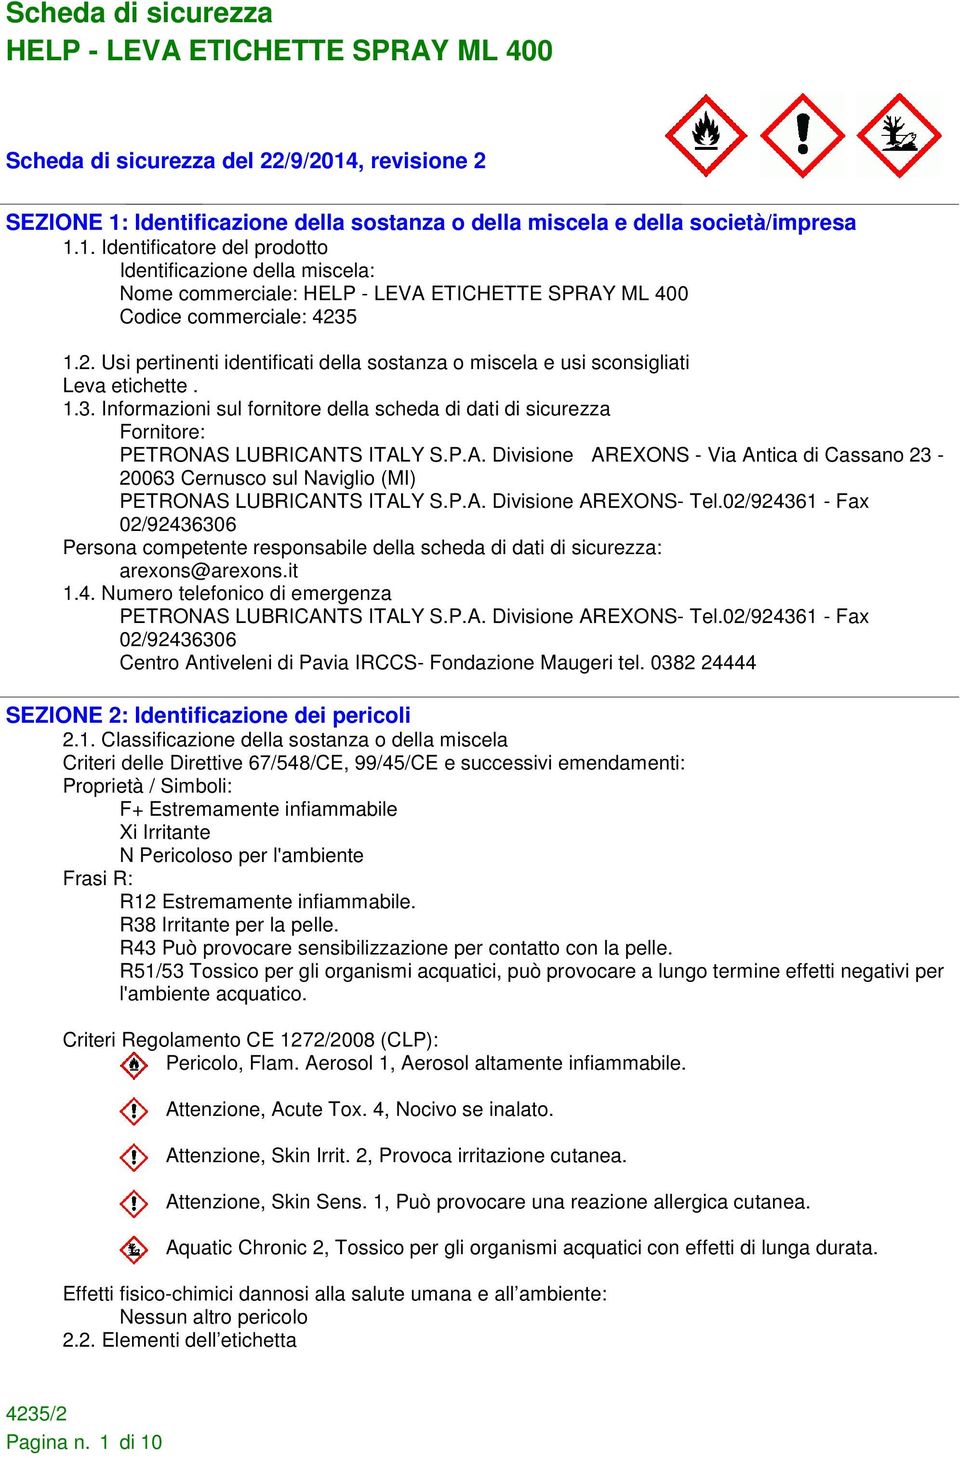 LUBRICANTS ITALY S.P.A. Divisione AREXONS - Via Antica di Cassano 23-20063 Cernusco sul Naviglio (MI) PETRONAS LUBRICANTS ITALY S.P.A. Divisione AREXONS- Tel.